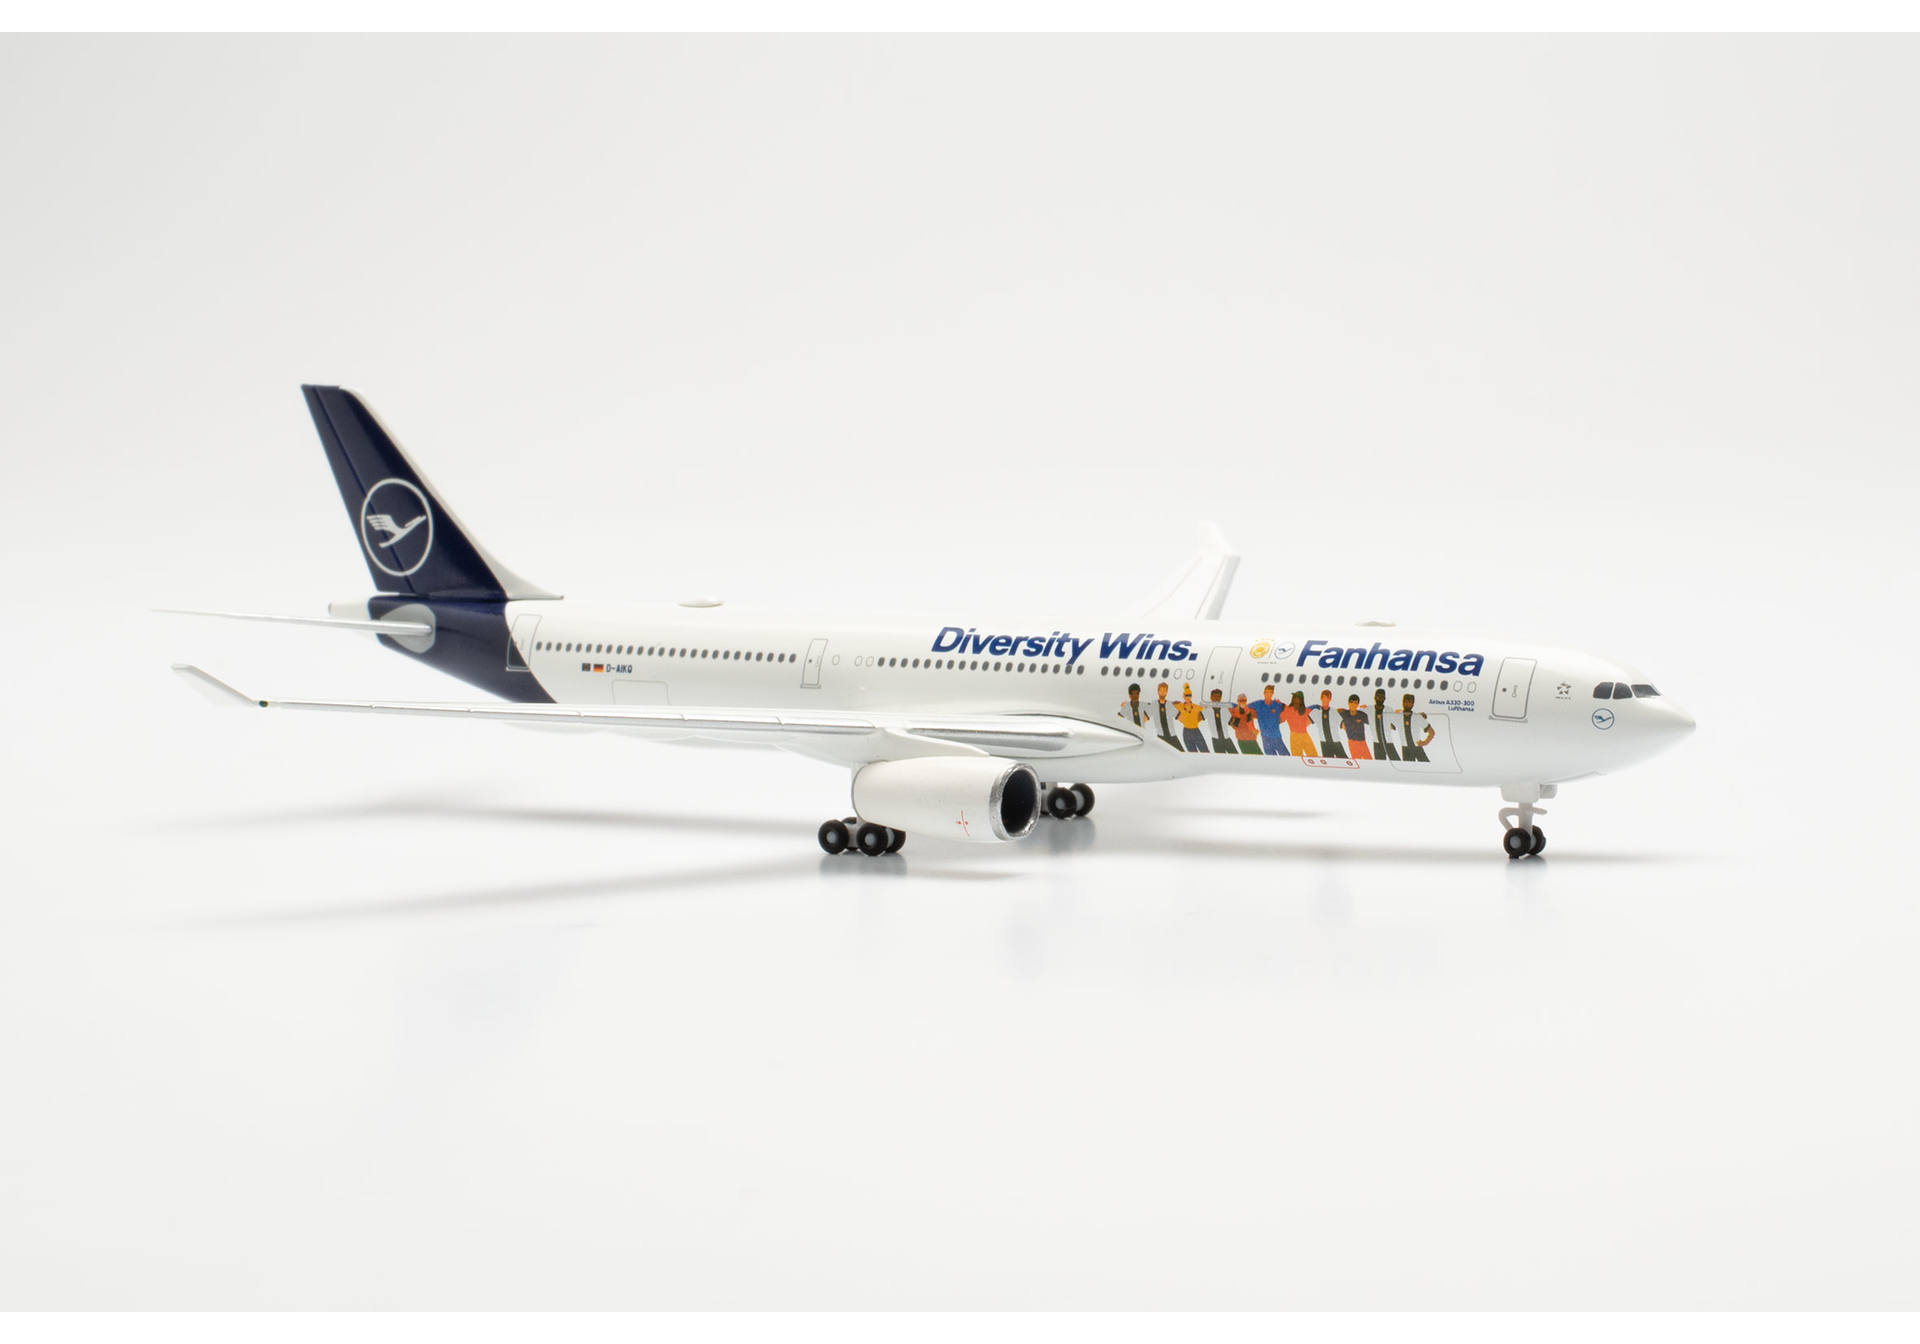 Lufthansa A330 Fanhansa – Diversity Wins - D-AIKQ